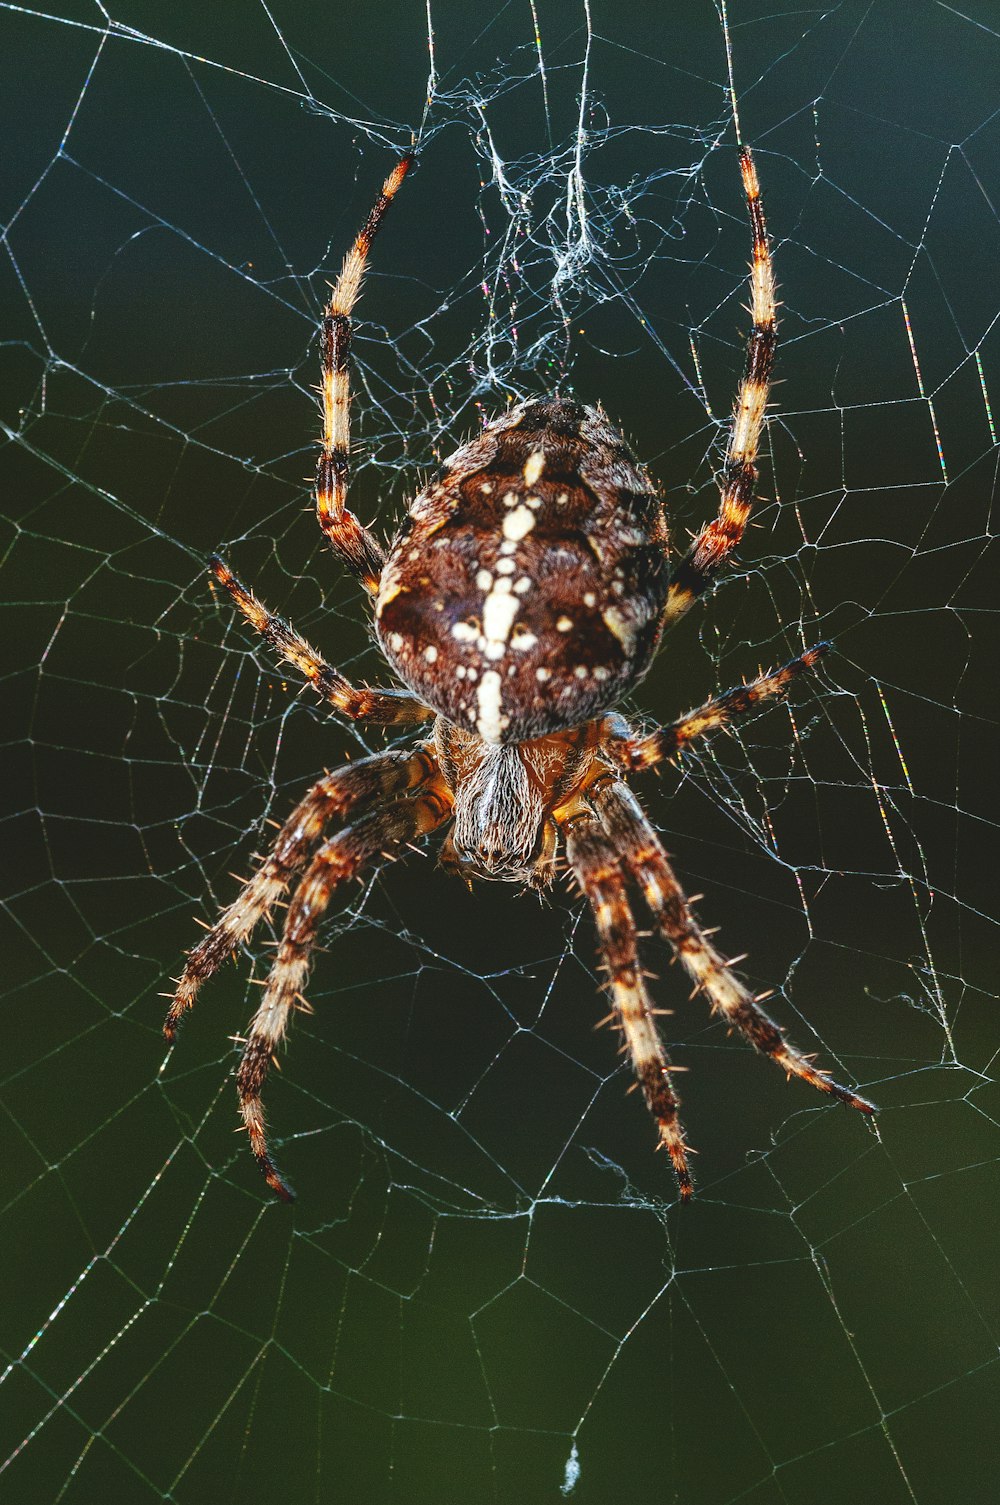 蜘蛛の巣の上の茶色のクモのクローズアップ写真